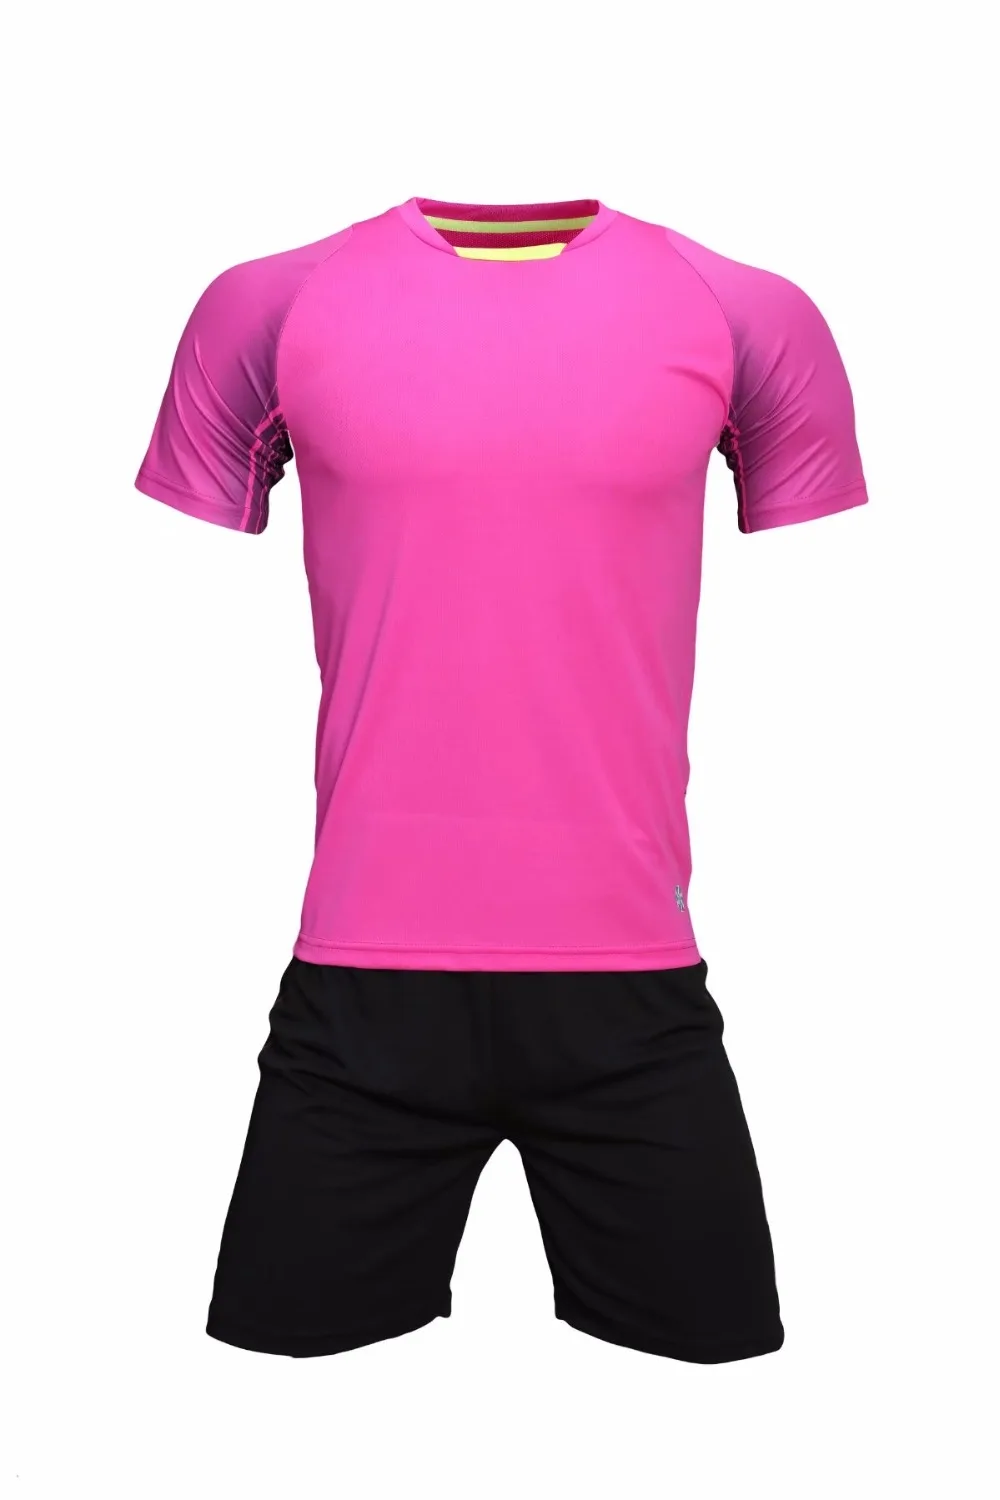 Мужские быстросохнущие футболки для тренировок комплекты футбольной команды для взрослых комплекты футбольные дышащие Джерси для бега